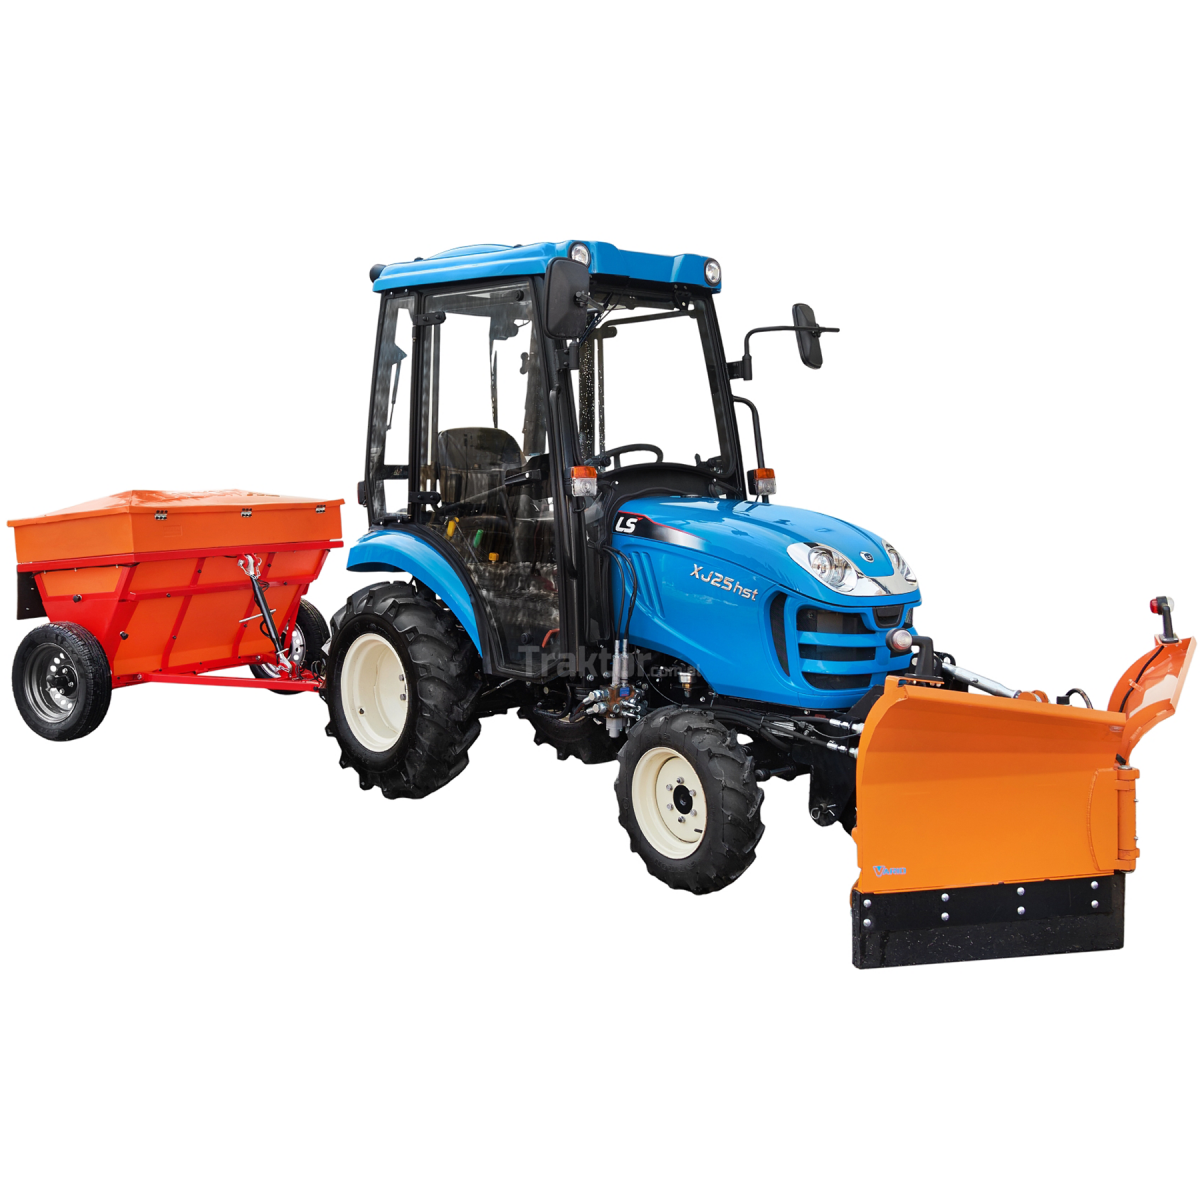 LS Traktor XJ25 HST 4x4 - 24,4 HP / KABINA + šípový sněhový pluh Vario 150 cm, hydraulický 4FARMER + Válcový sypač písku Dexwal